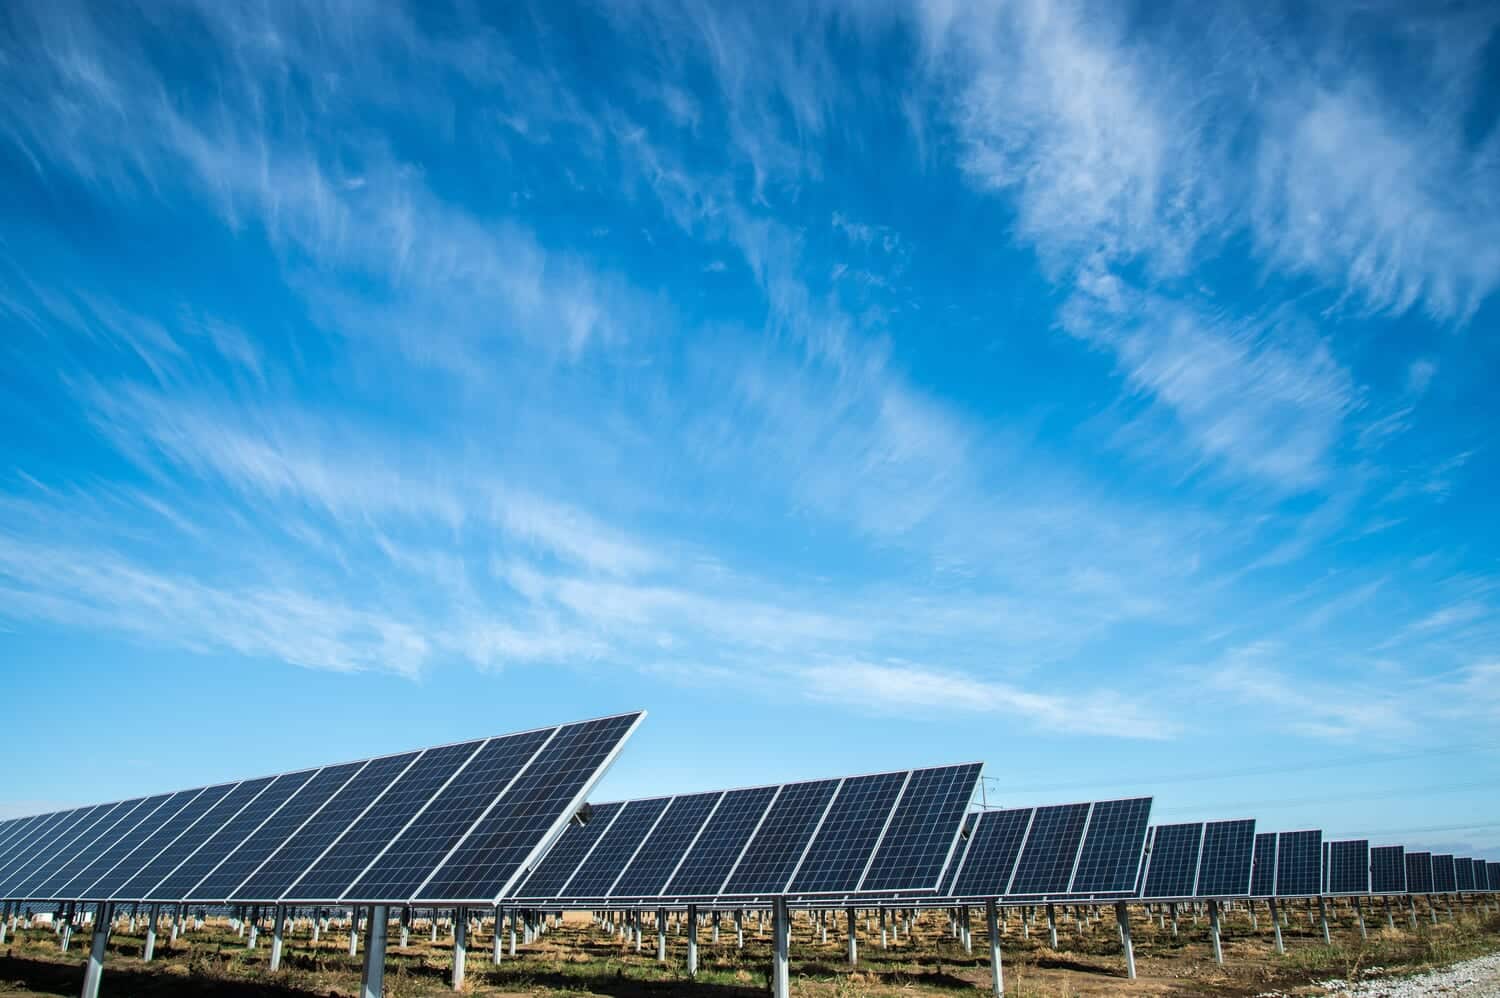 タンデム・シリコン・ペロブスカイト太陽電池で初の変換効率30％越えを実現